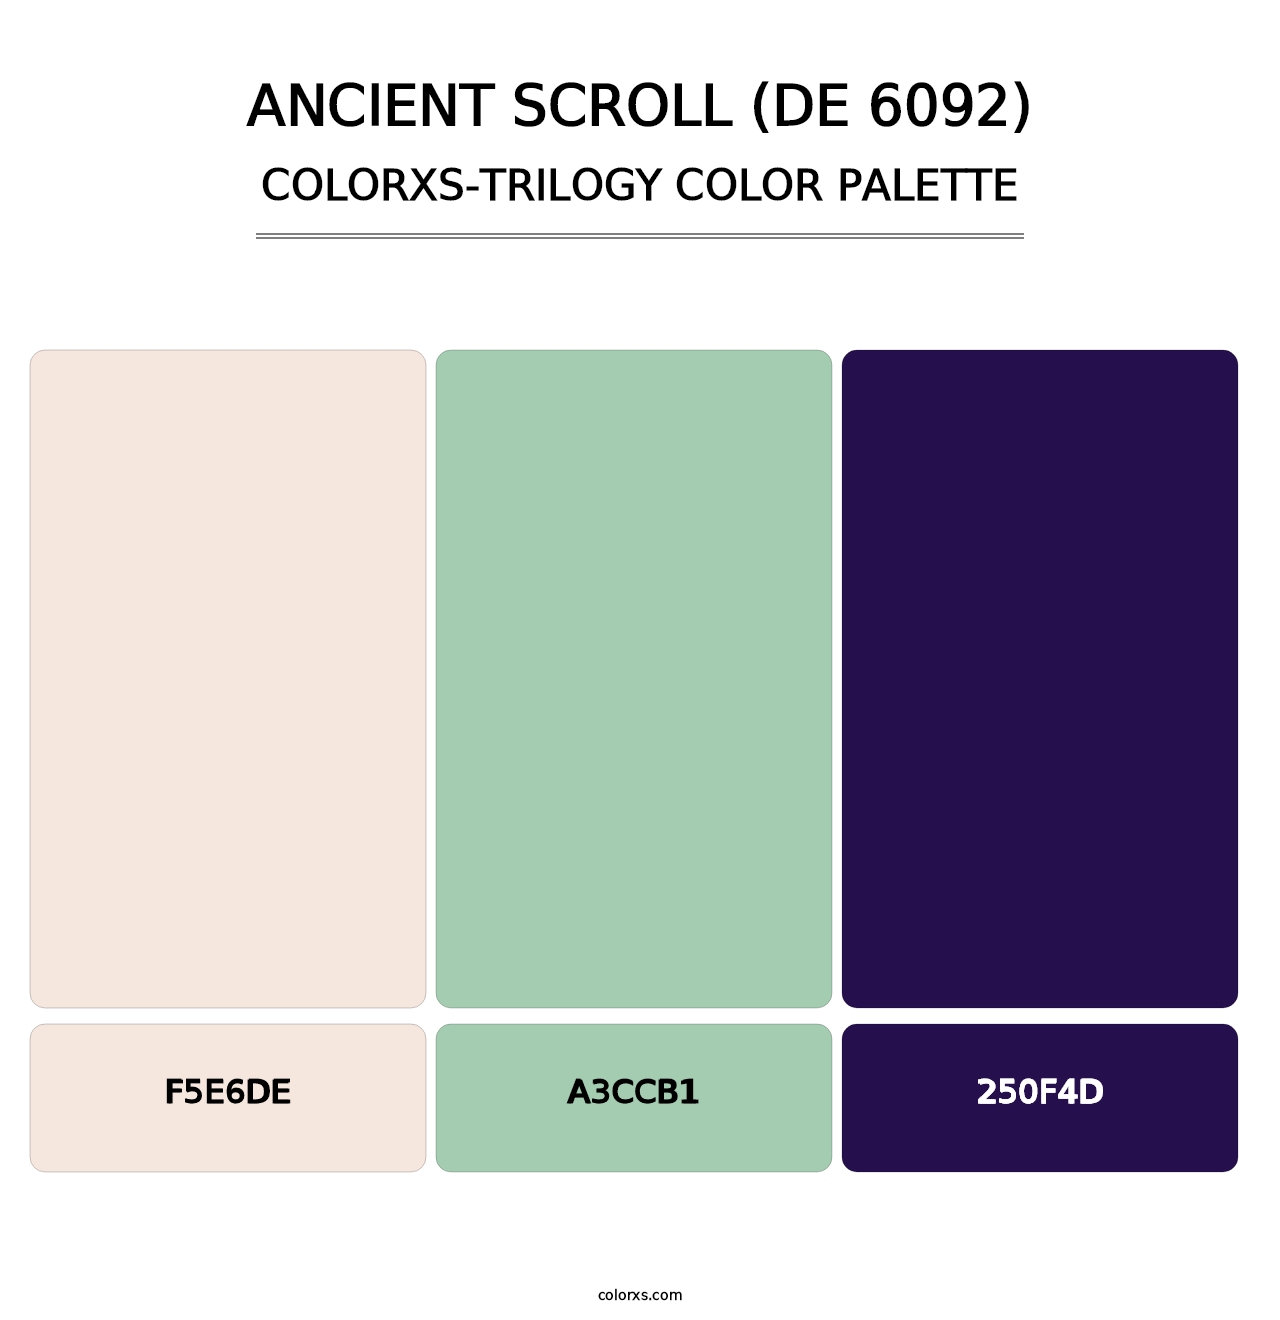 Ancient Scroll (DE 6092) - Colorxs Trilogy Palette